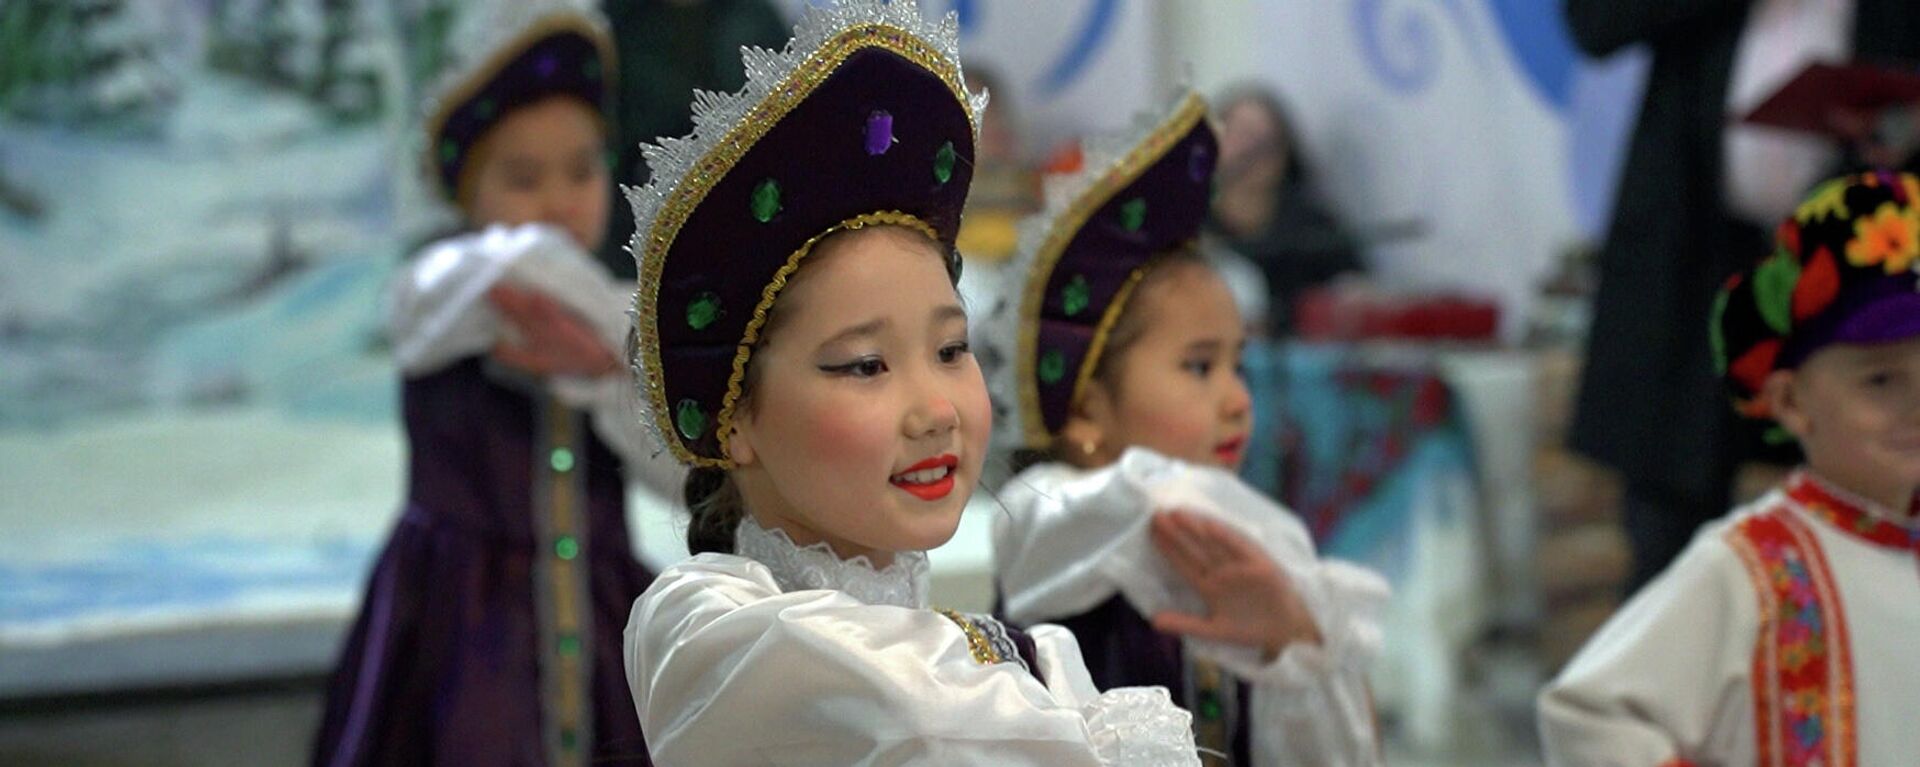 В Бишкеке проходит интересный фестиваль — вход свободный - Sputnik Кыргызстан, 1920, 17.12.2021